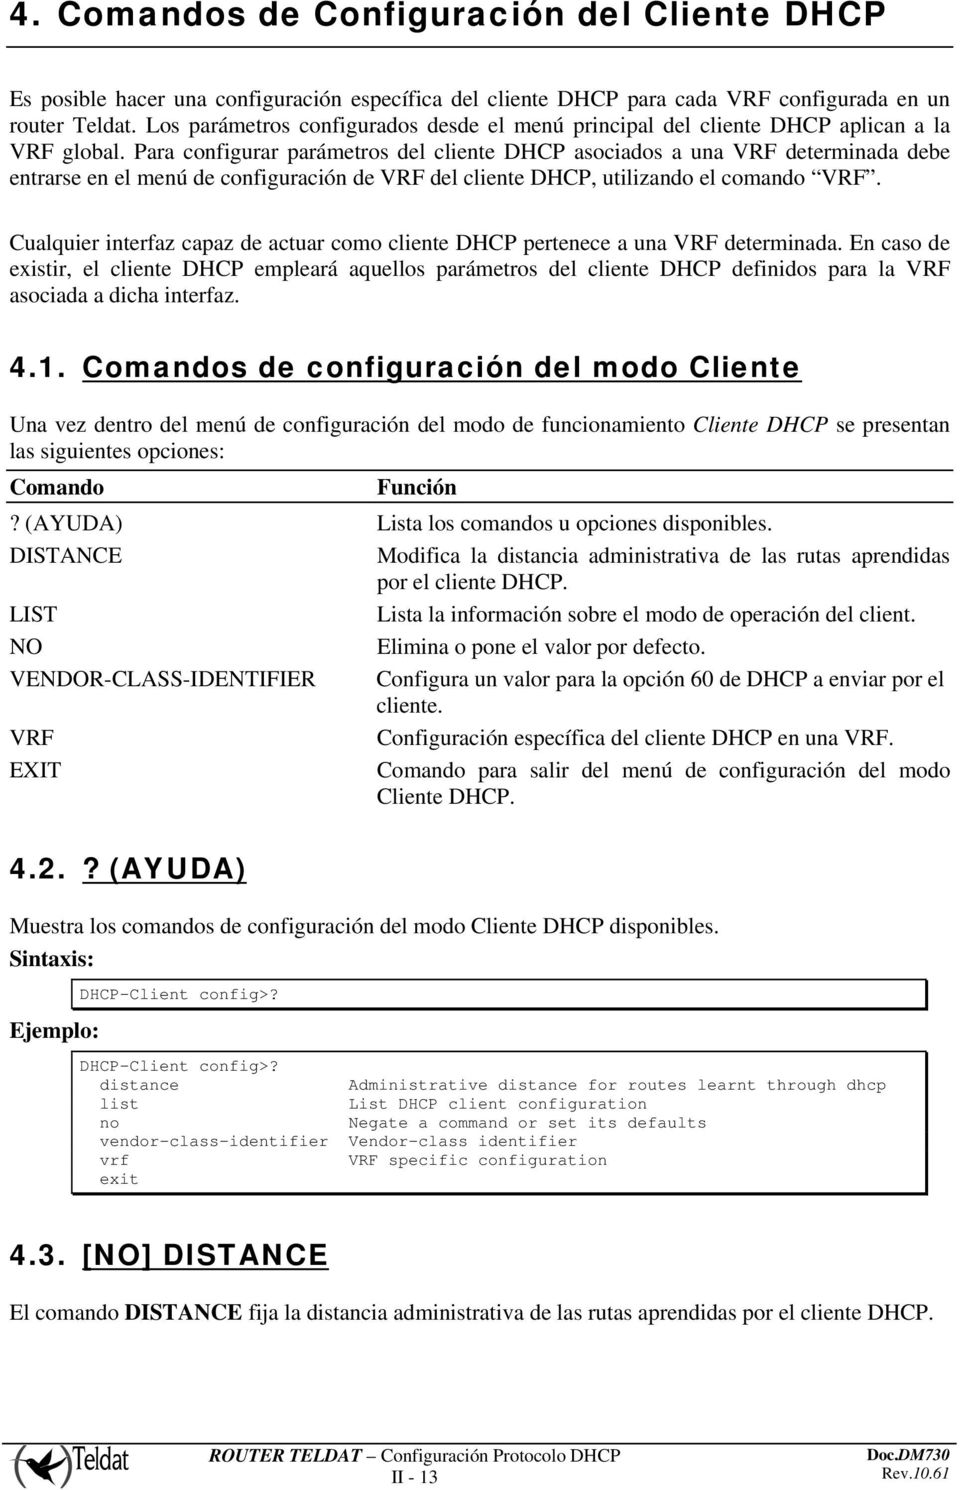 Para configurar parámetros del cliente DHCP asociados a una VRF determinada debe entrarse en el menú de configuración de VRF del cliente DHCP, utilizando el comando VRF.